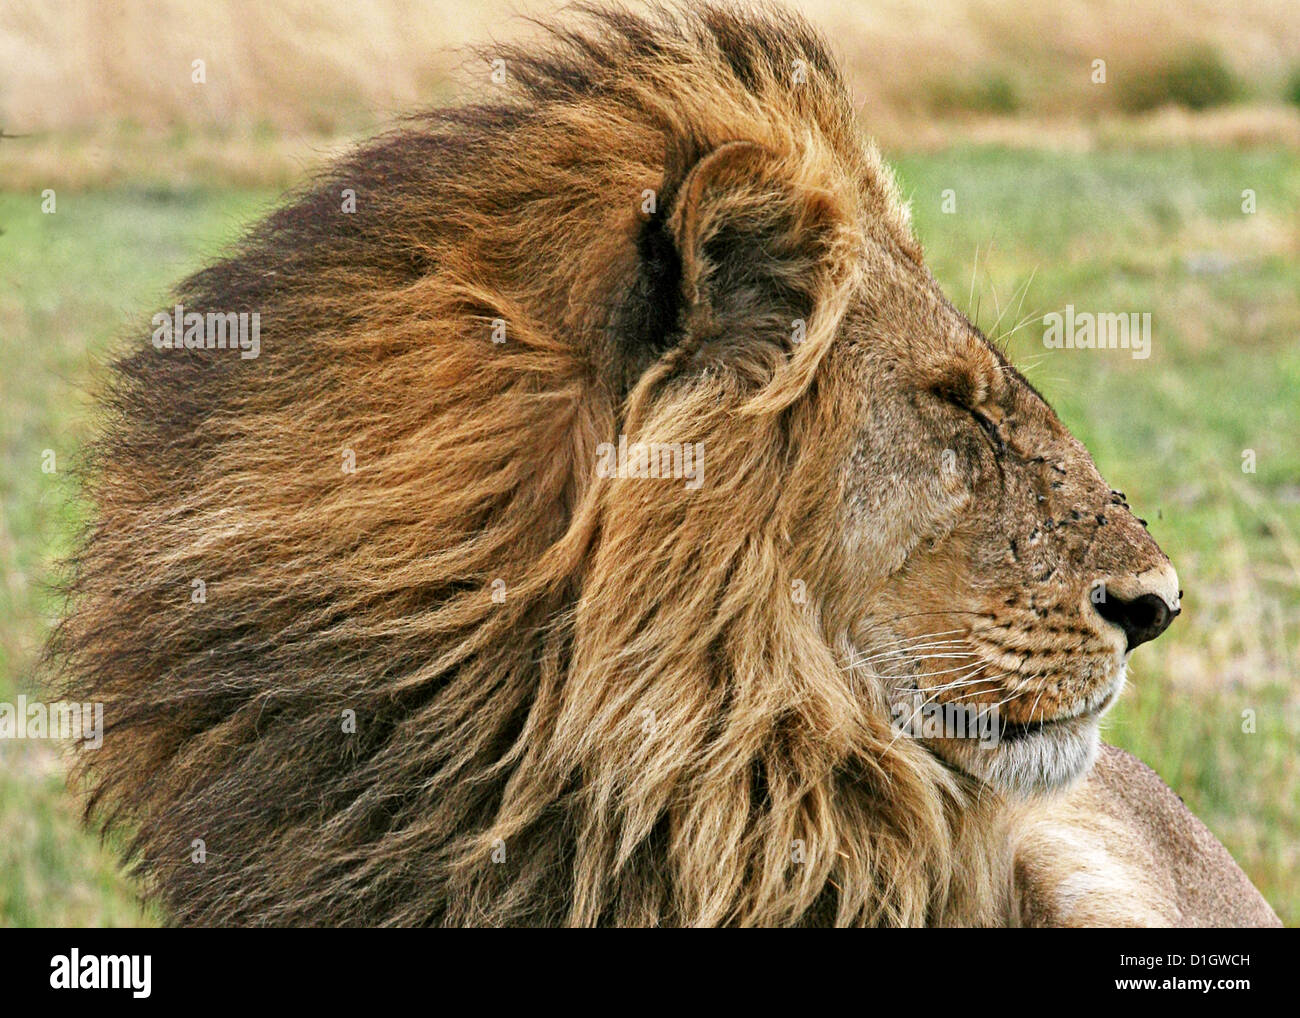 Un lion avec une magnifique crinière. Banque D'Images